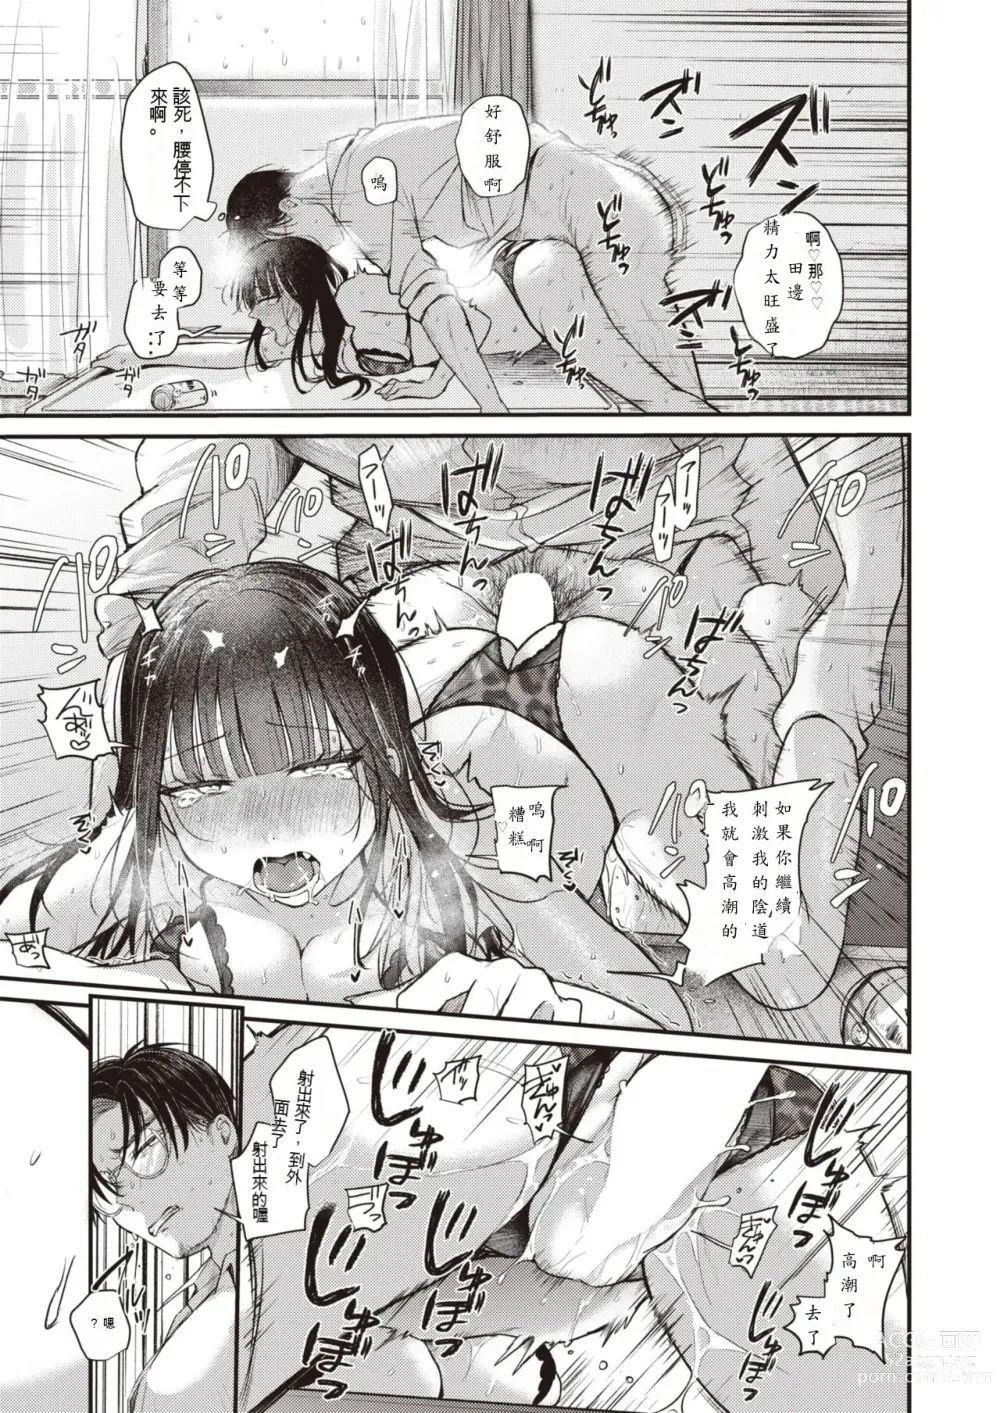 Page 23 of manga Beranda Goshi no Shoka